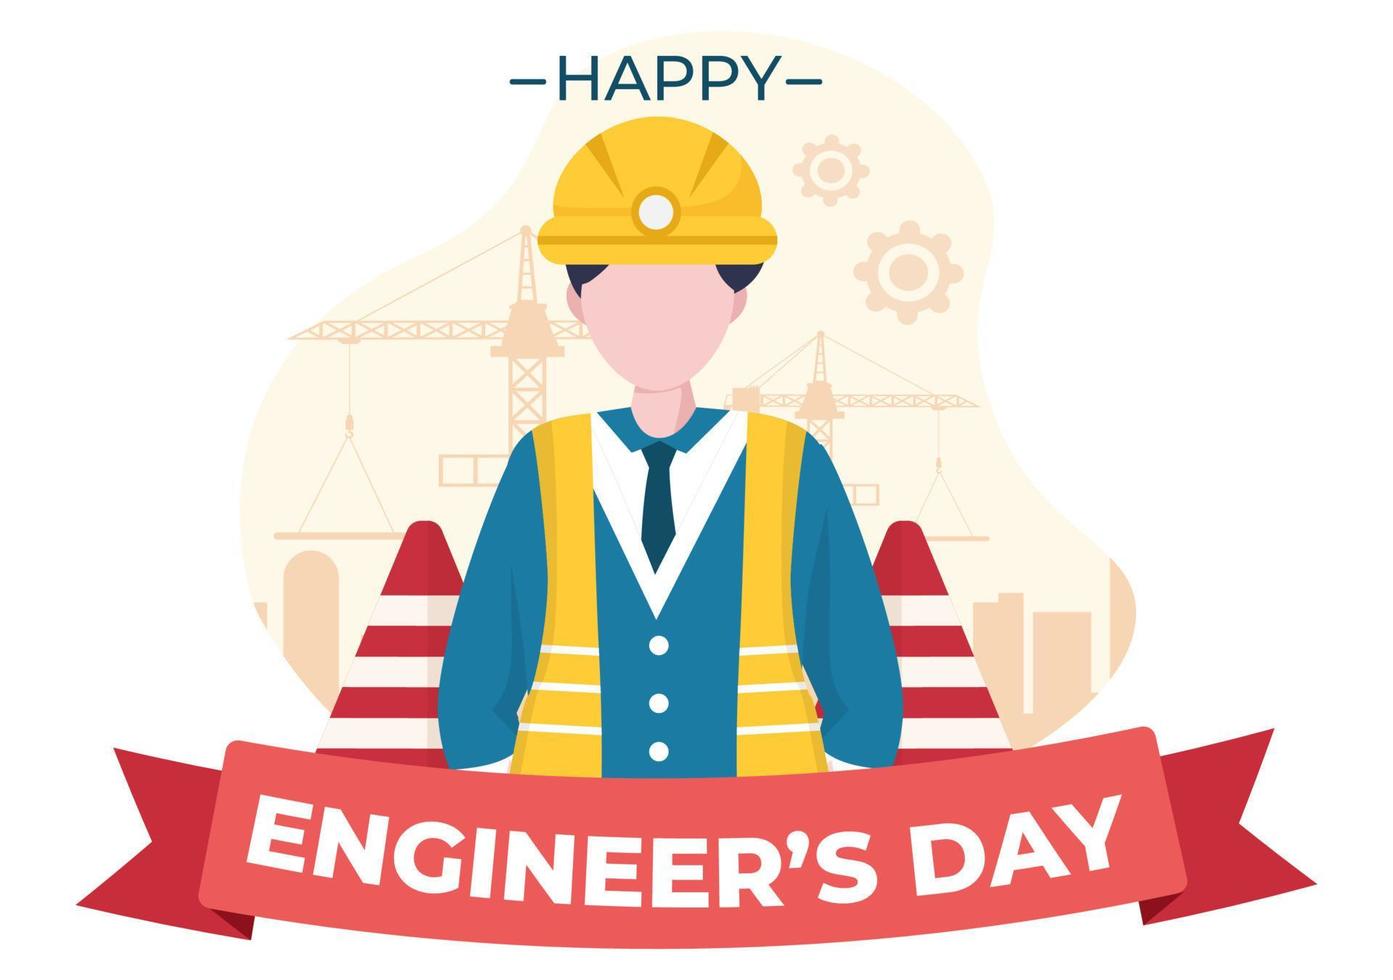 illustrazione commemorativa del giorno degli ingegneri felici per l'ingegnere vettore